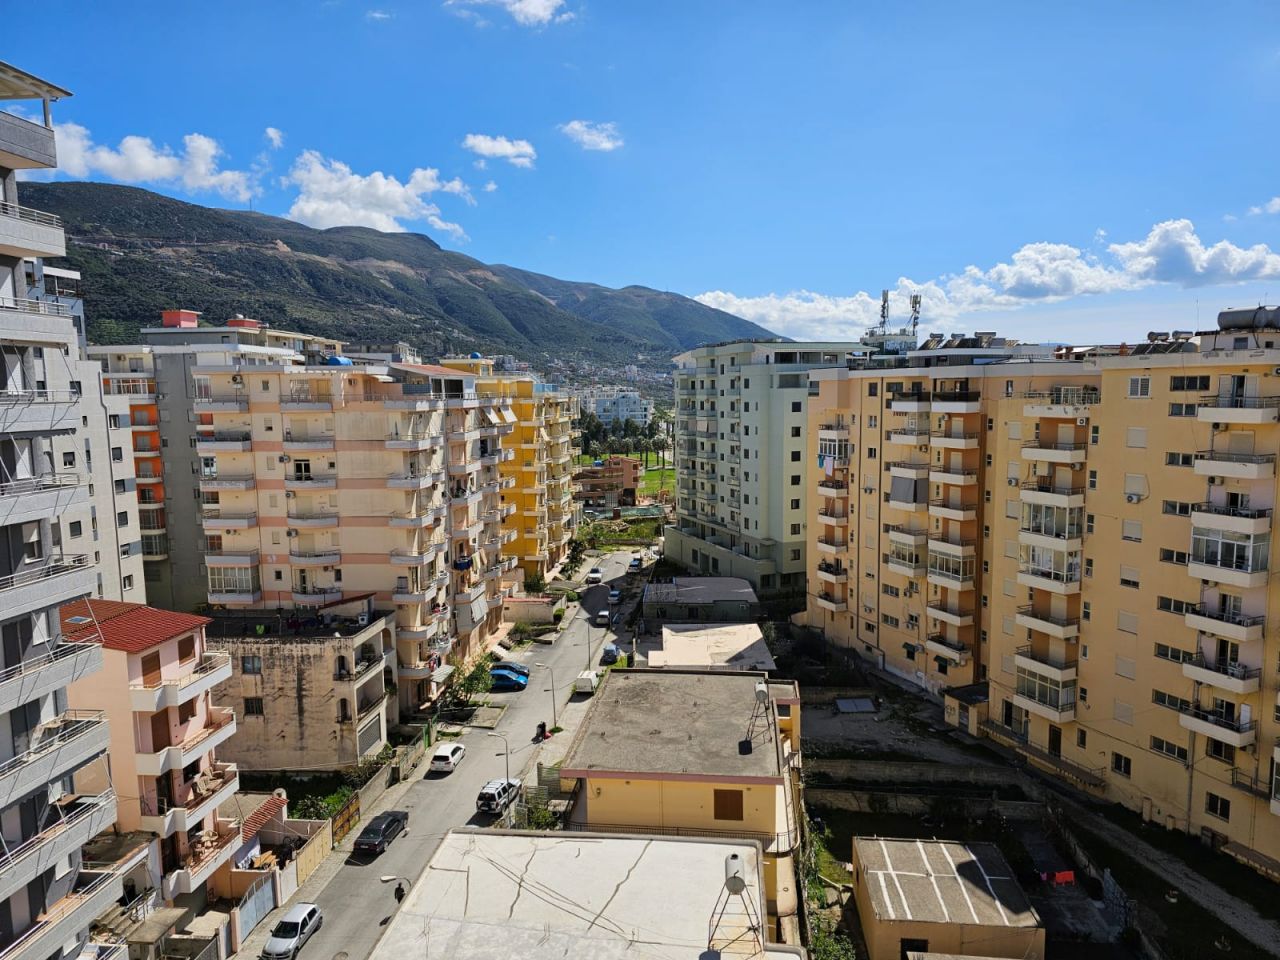 Nieruchomość Na Sprzedaż W Wlorze W Albanii